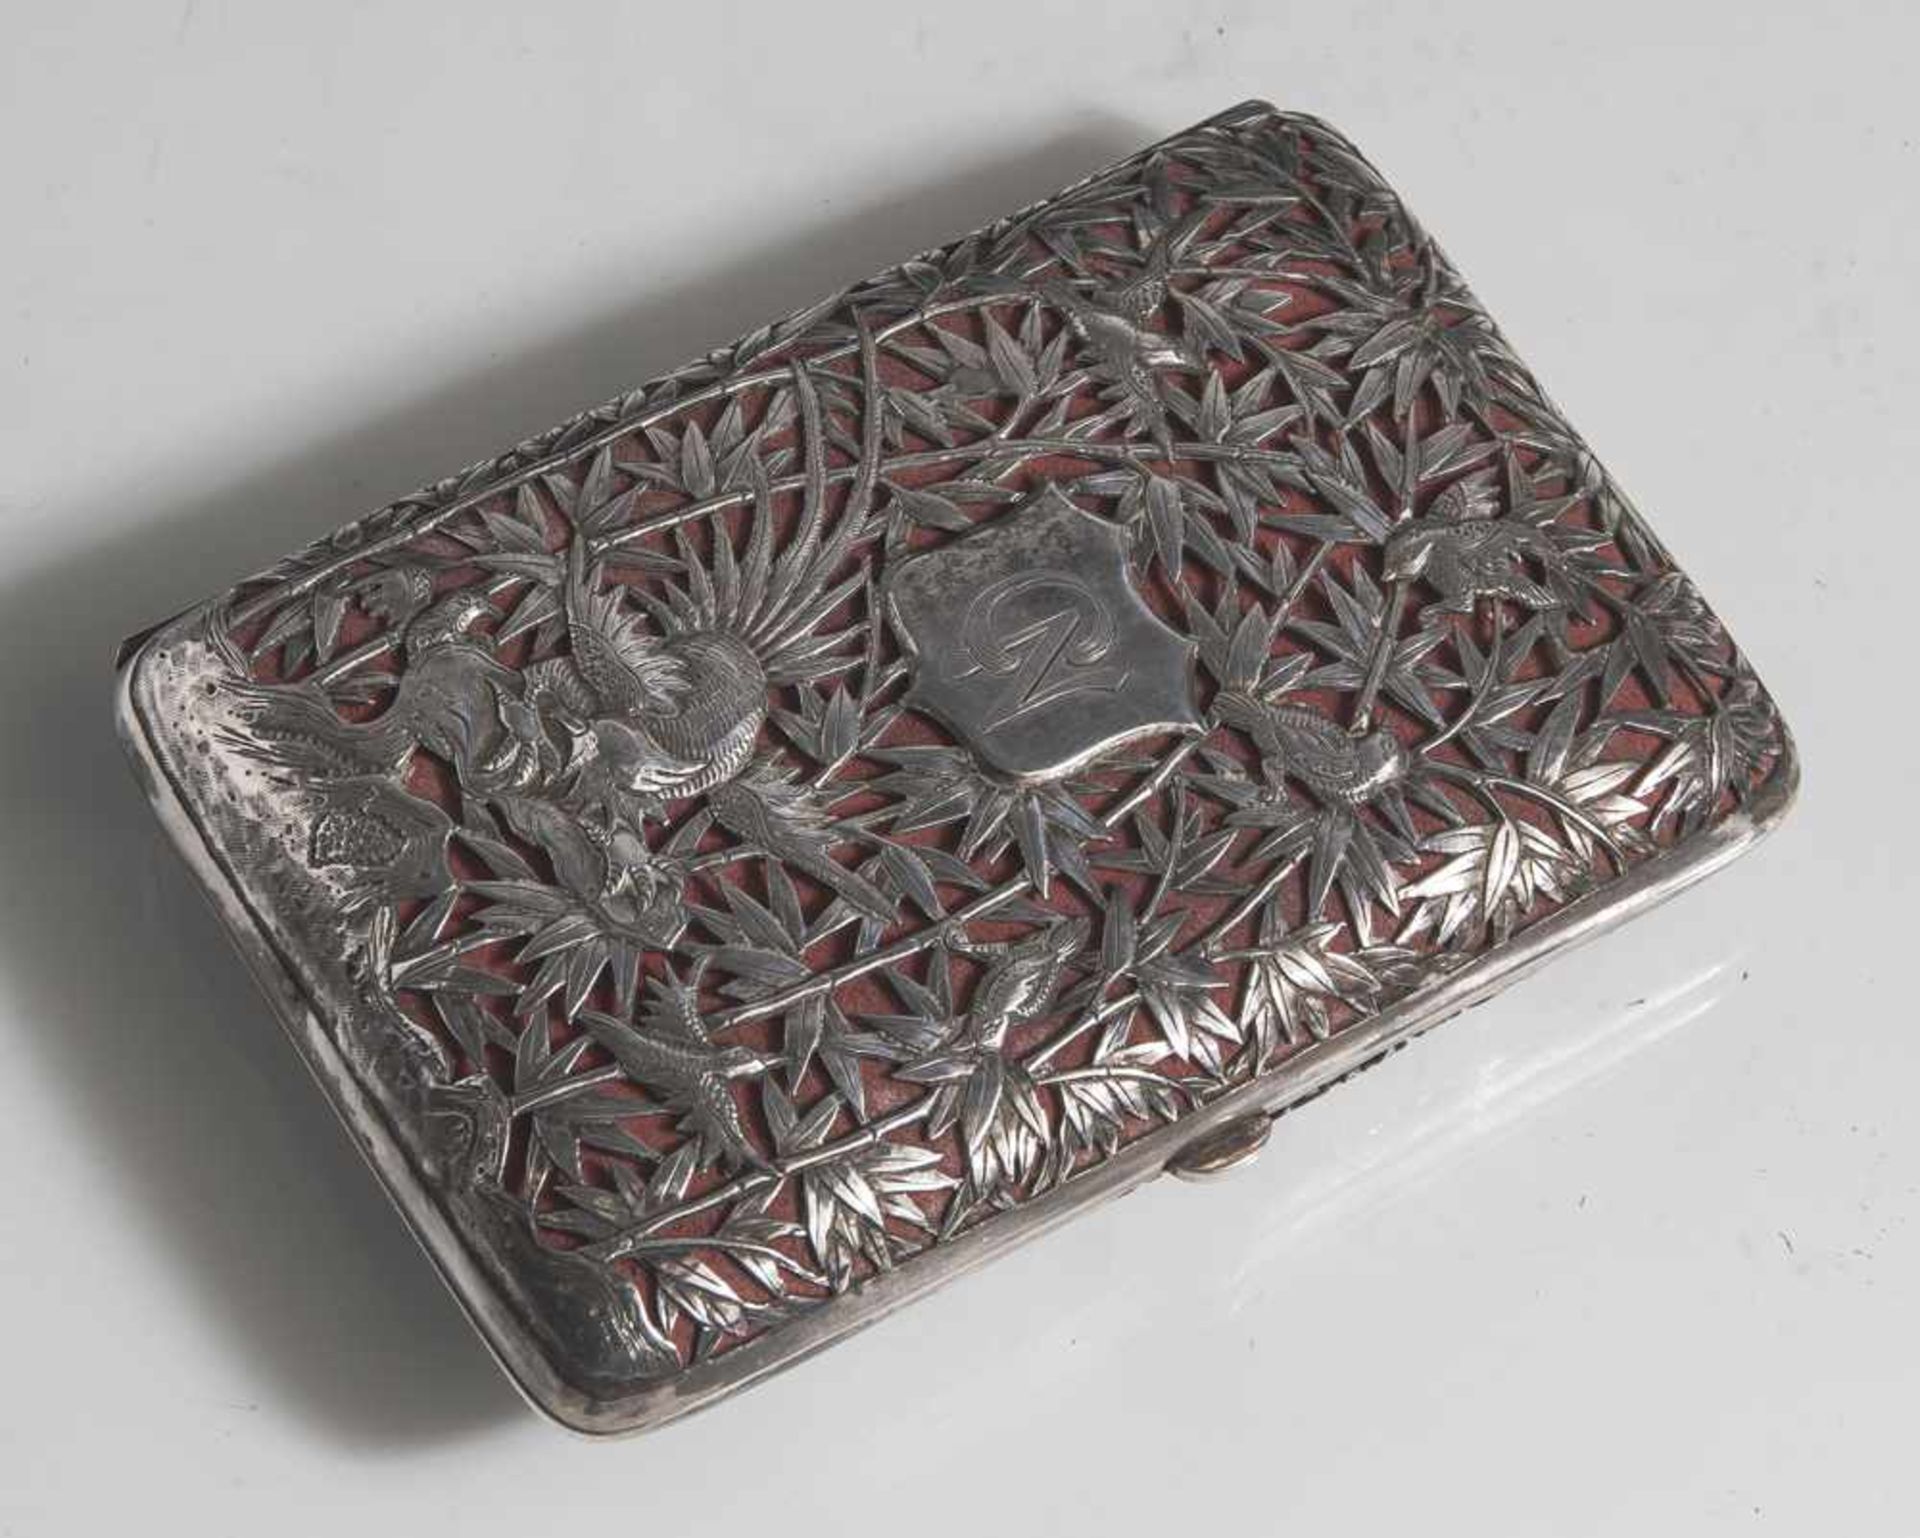 Zigarettenetui, Silber, 19./20. Jahrhundert, rechteckige, leicht gebauchte Form, in schöner